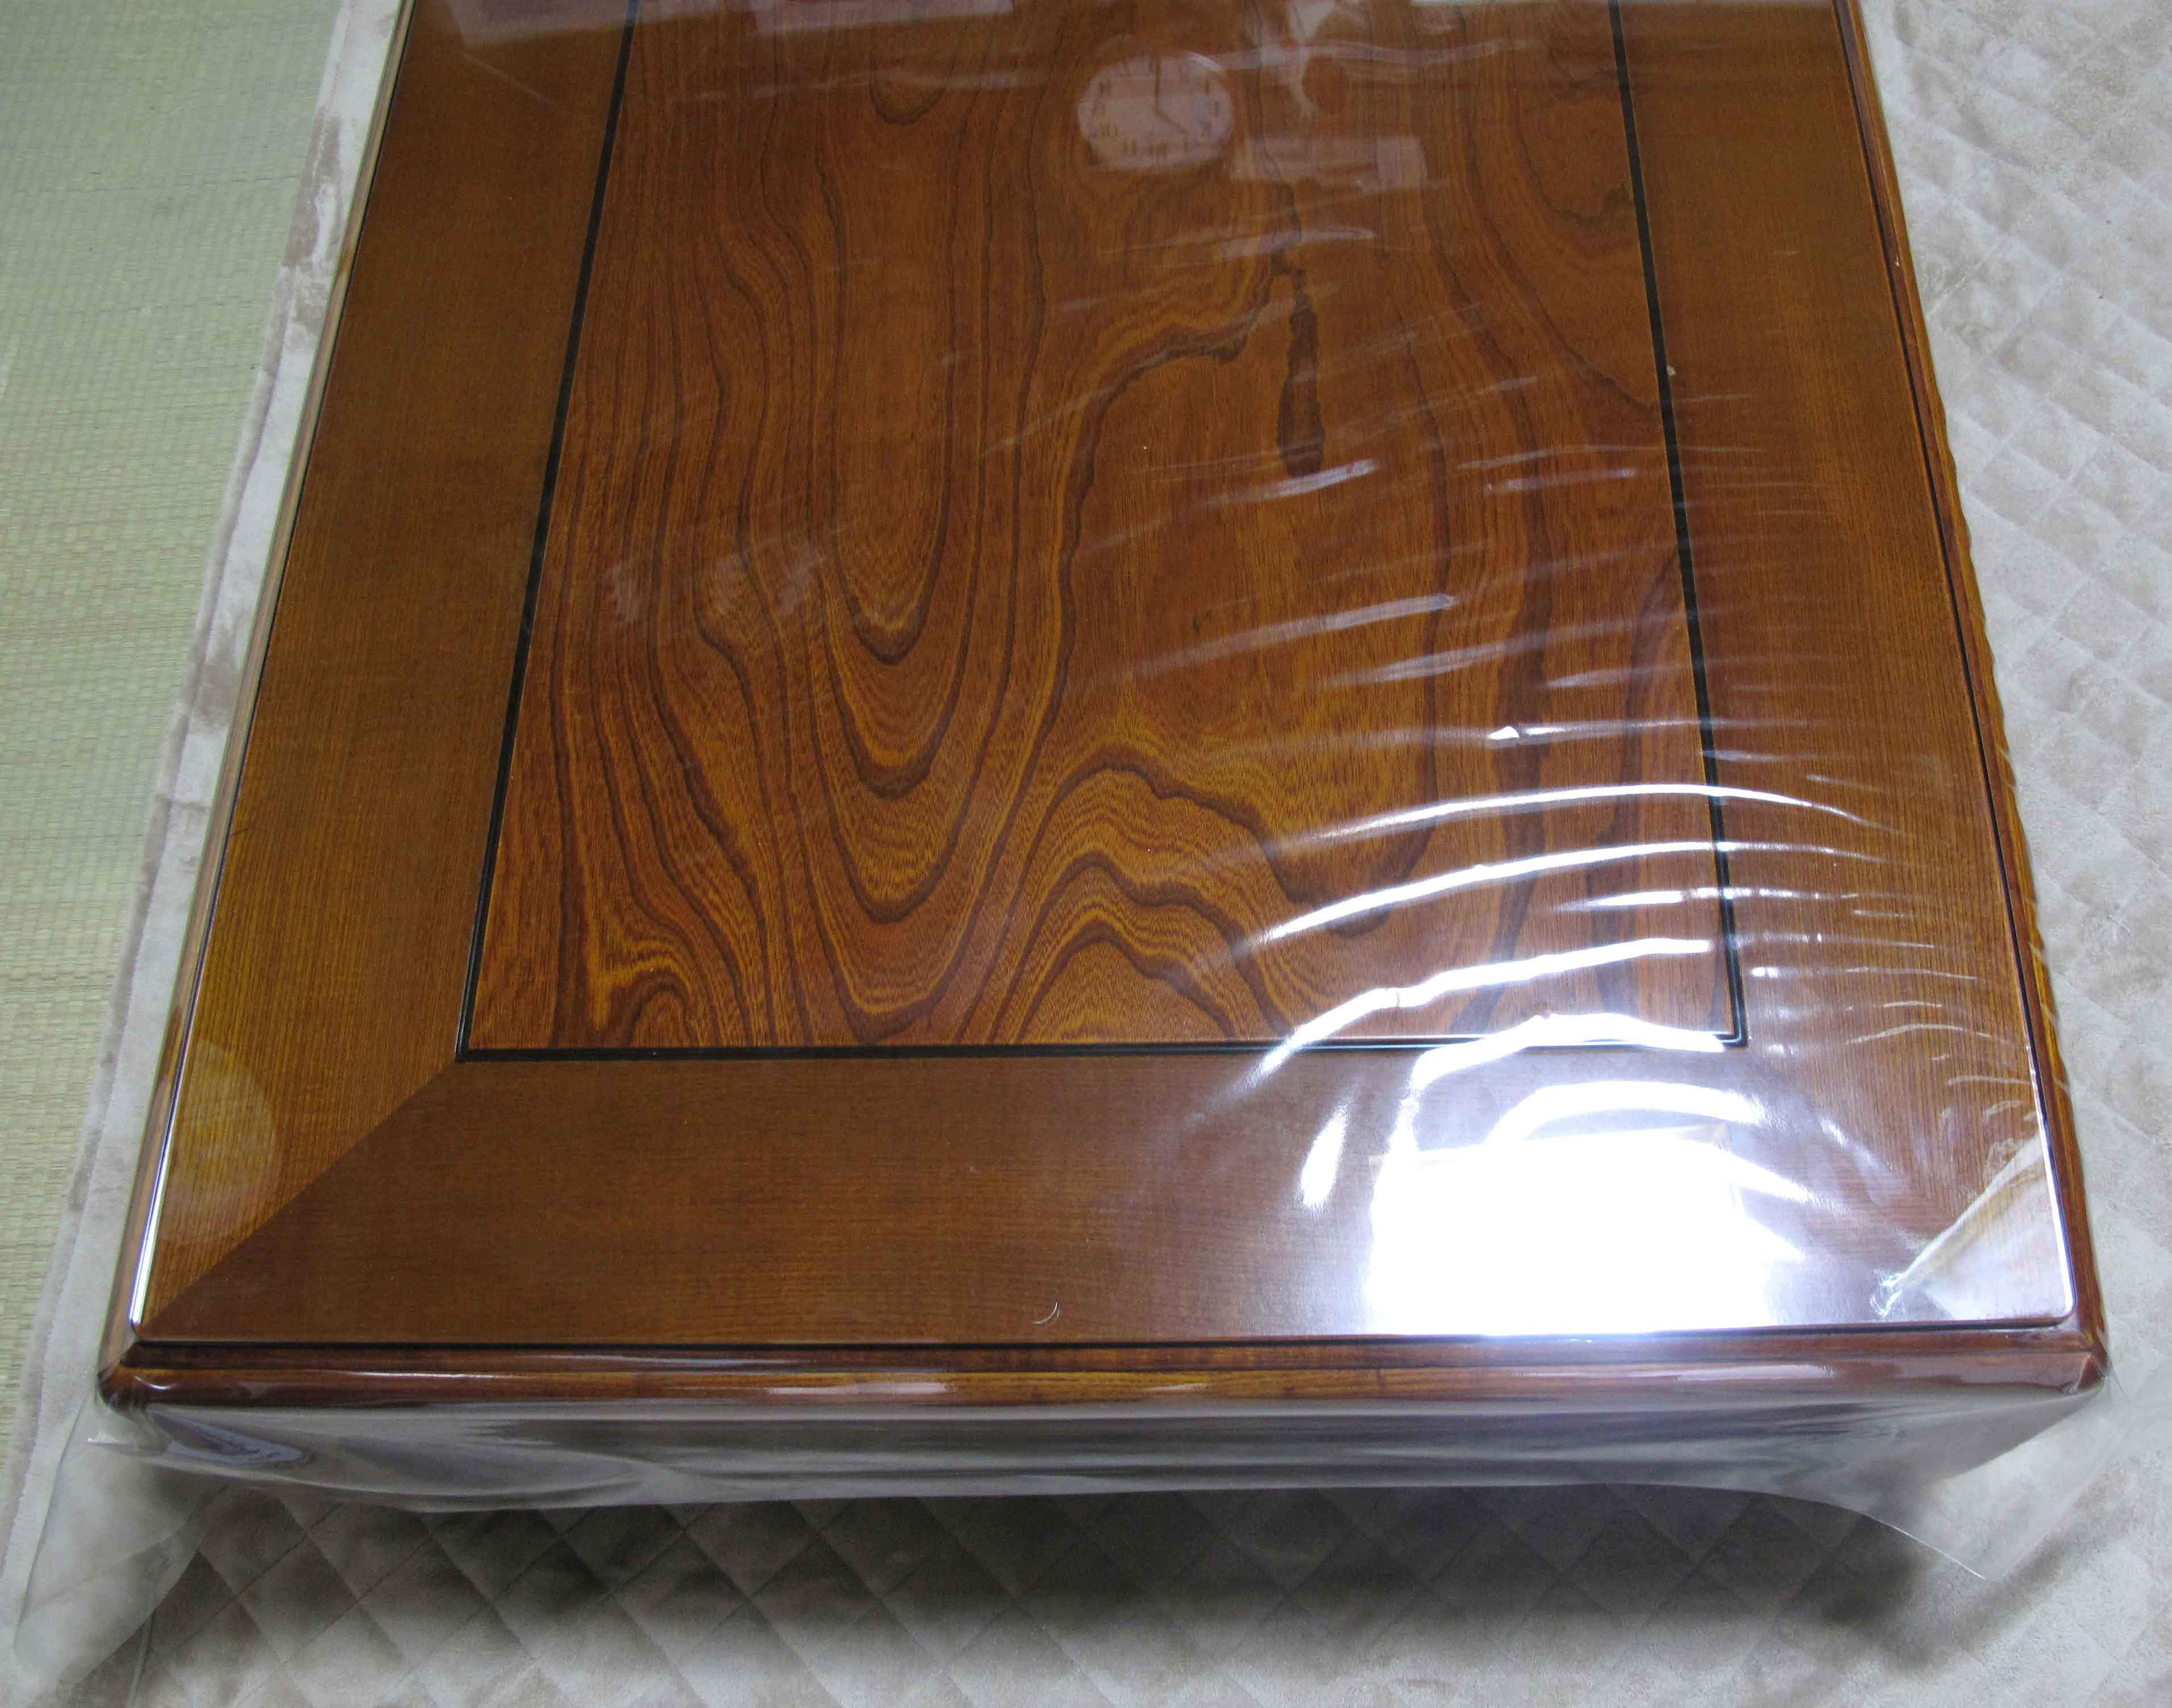 木製のテーブルの天板の上にガラスを置いた実例64選 – KG Press ガラス情報発信メディア